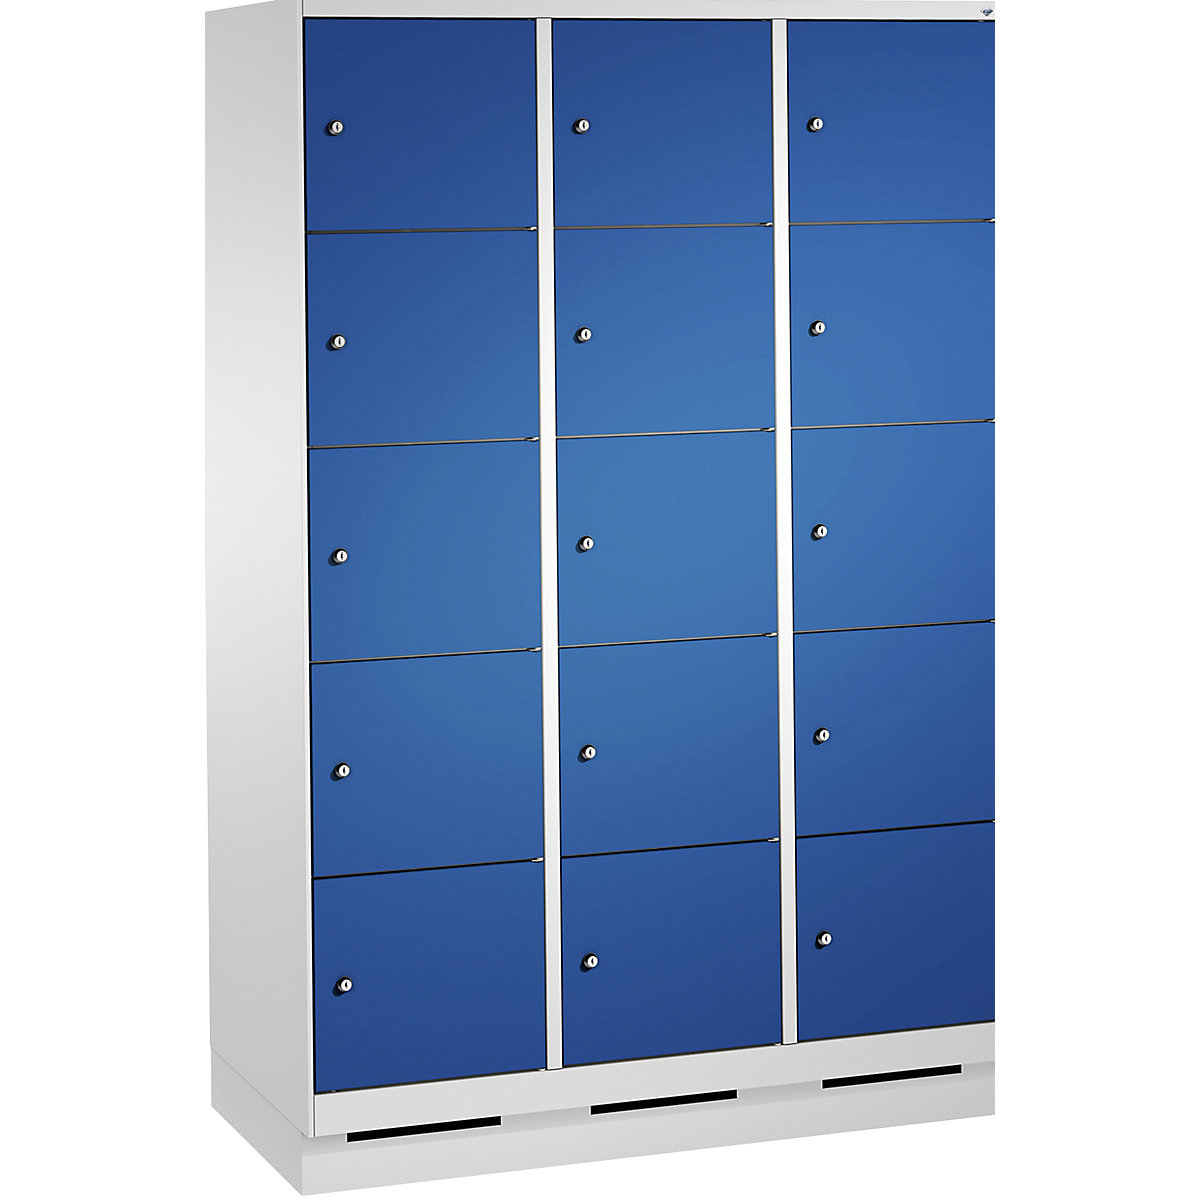 Armoire à casiers sur socle EVOLO – C+P, 3 compartiments, 5 casiers chacun, largeur compartiments 400 mm, gris clair / bleu gentiane-8